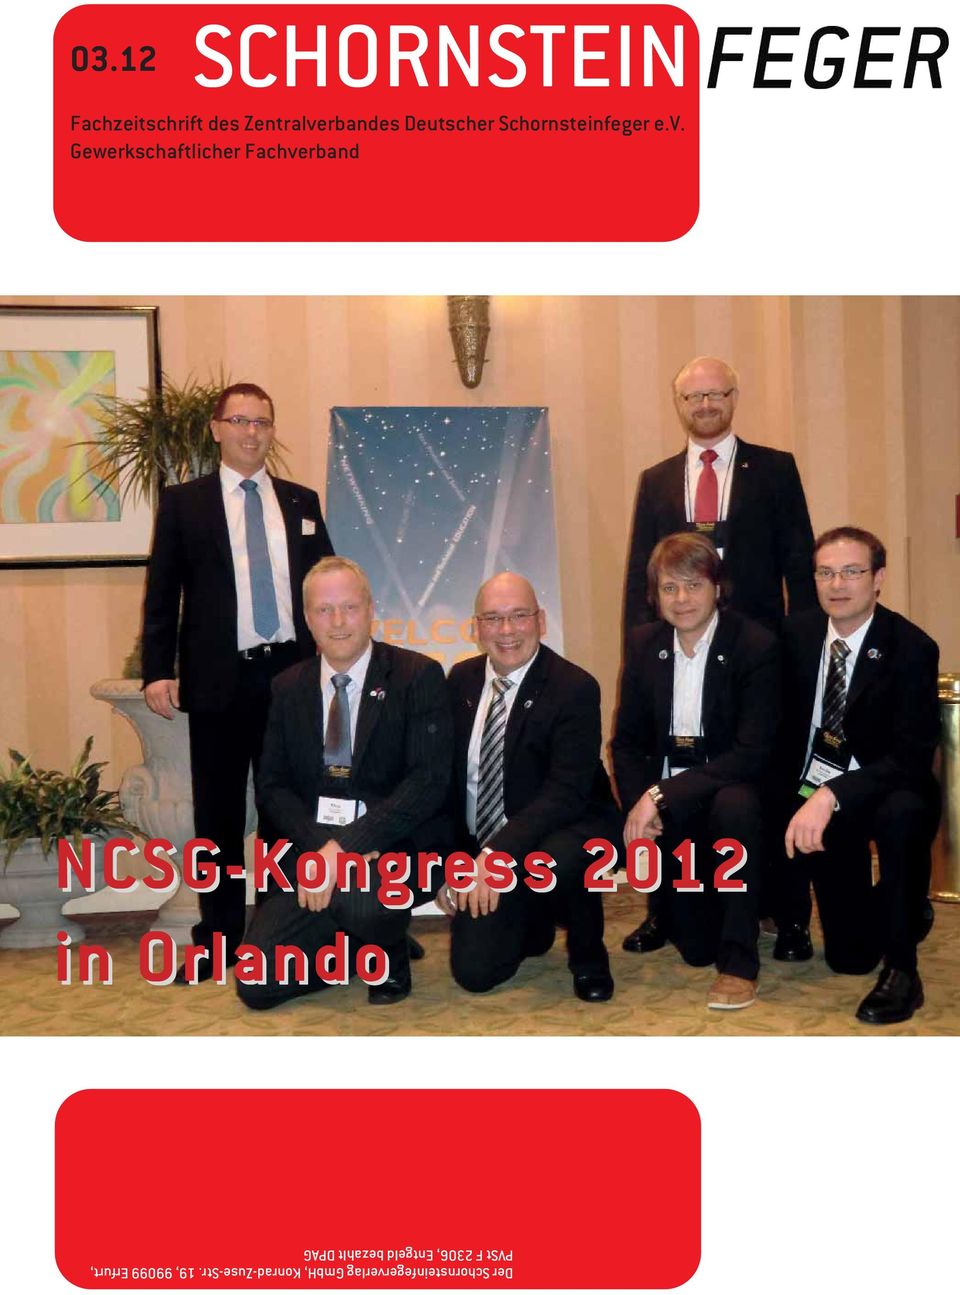 Gewerkschaftlicher Fachverband NCSG-Kongress 2012 in Orlando